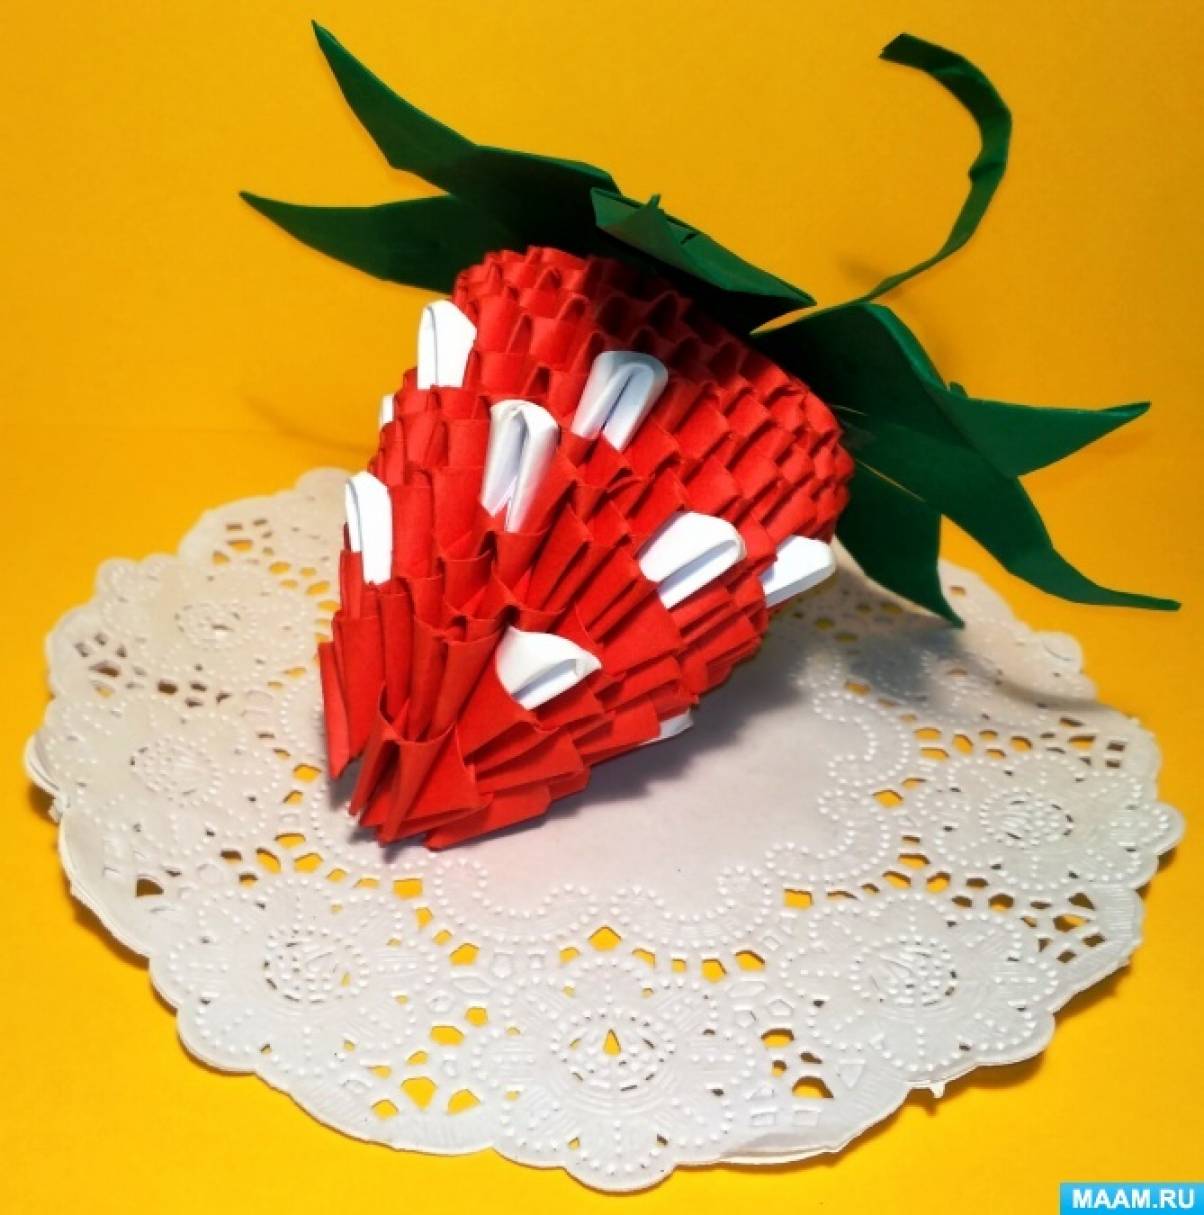 Схемы сборки декоративных корзинок в технике модульное оригами, помогут вам в работе.